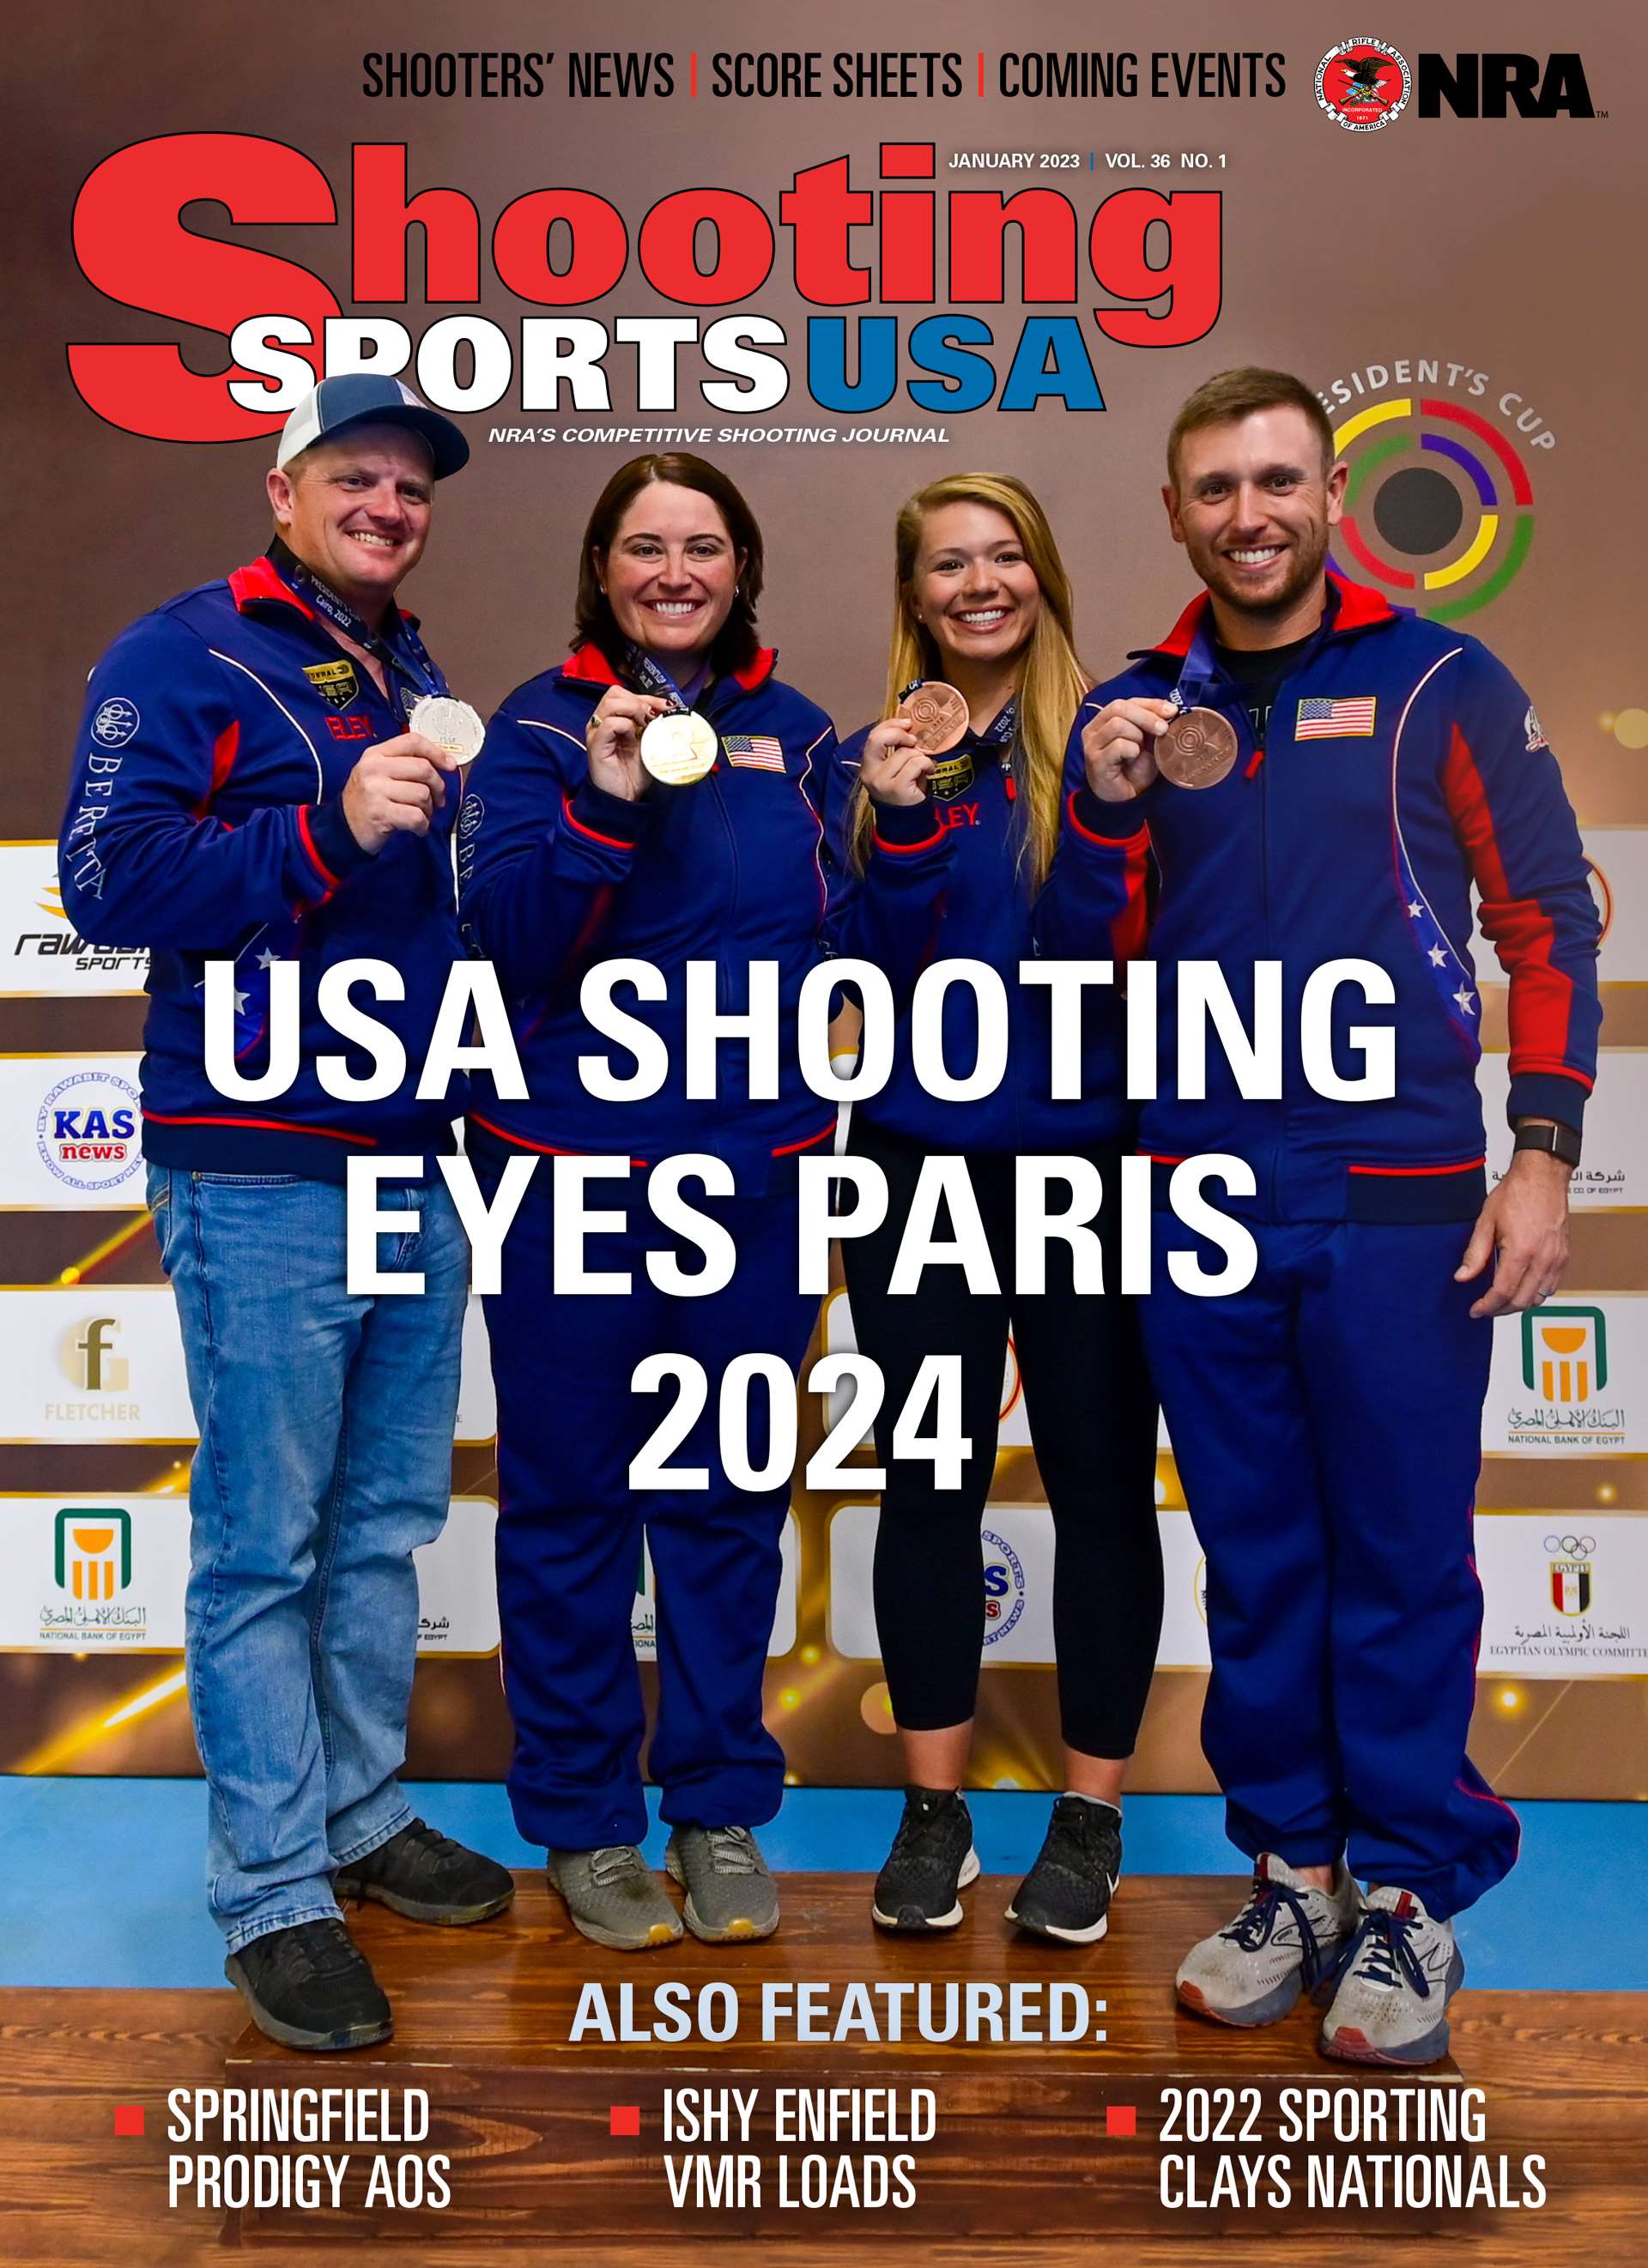 USA Shooting Eyes Paris 2024